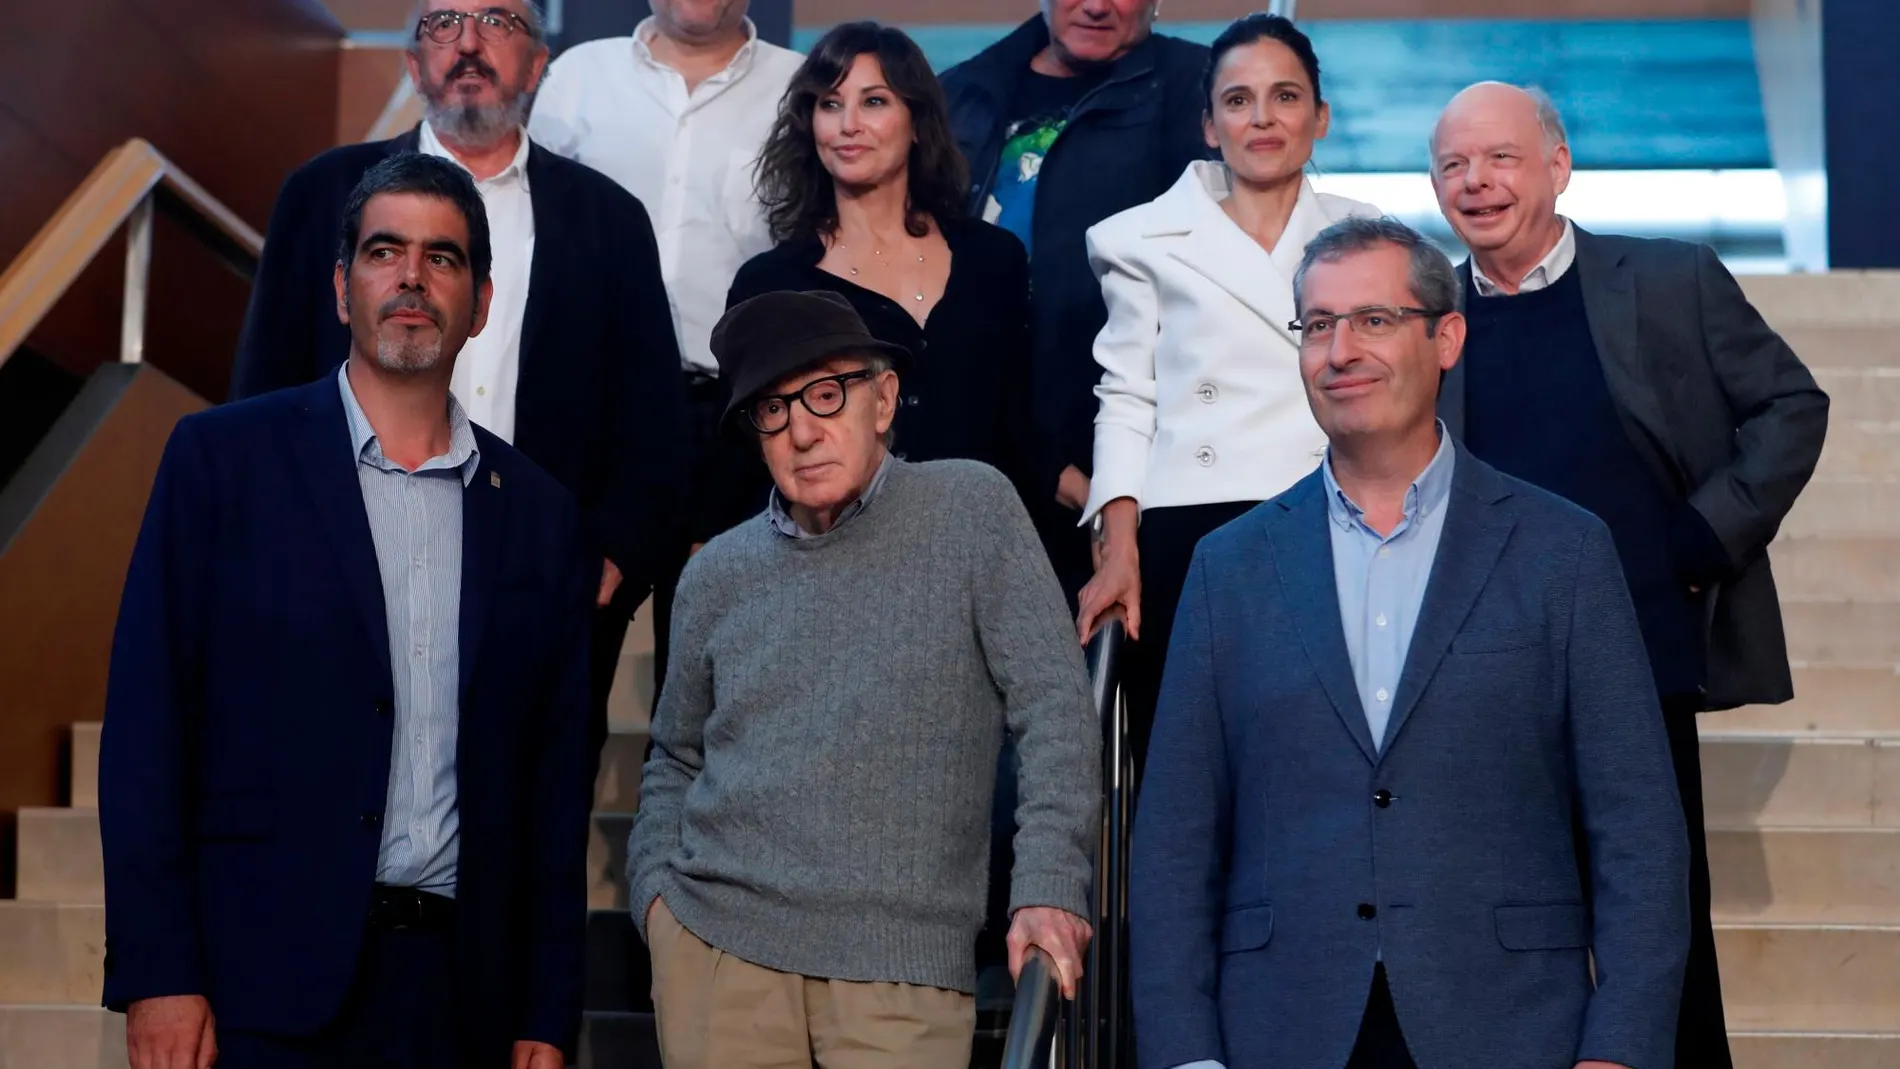 El director Woody Allen junto con los actores Jaume Roures, Elena Anaya, Wally Shawn, Gina Gersho, Sergi López, el alcalde Eneko Goia y el director del Festival Internacional de Cine de San Sebastián, Jose Luis Reborinos / EFE